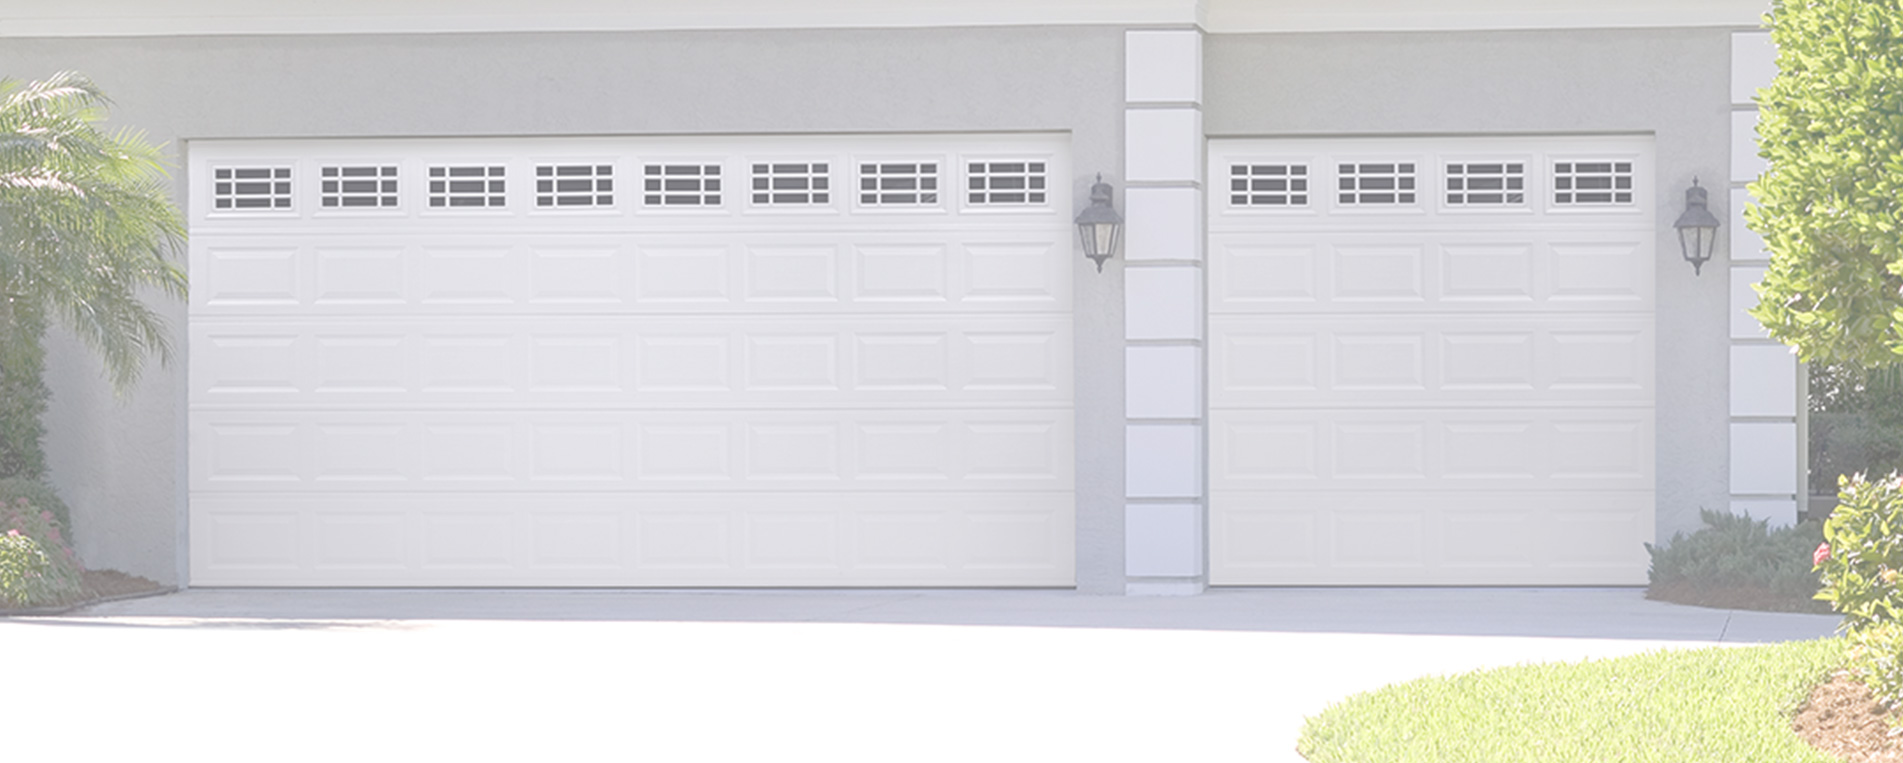 Factors to Consider Before Buying a New Garage Door